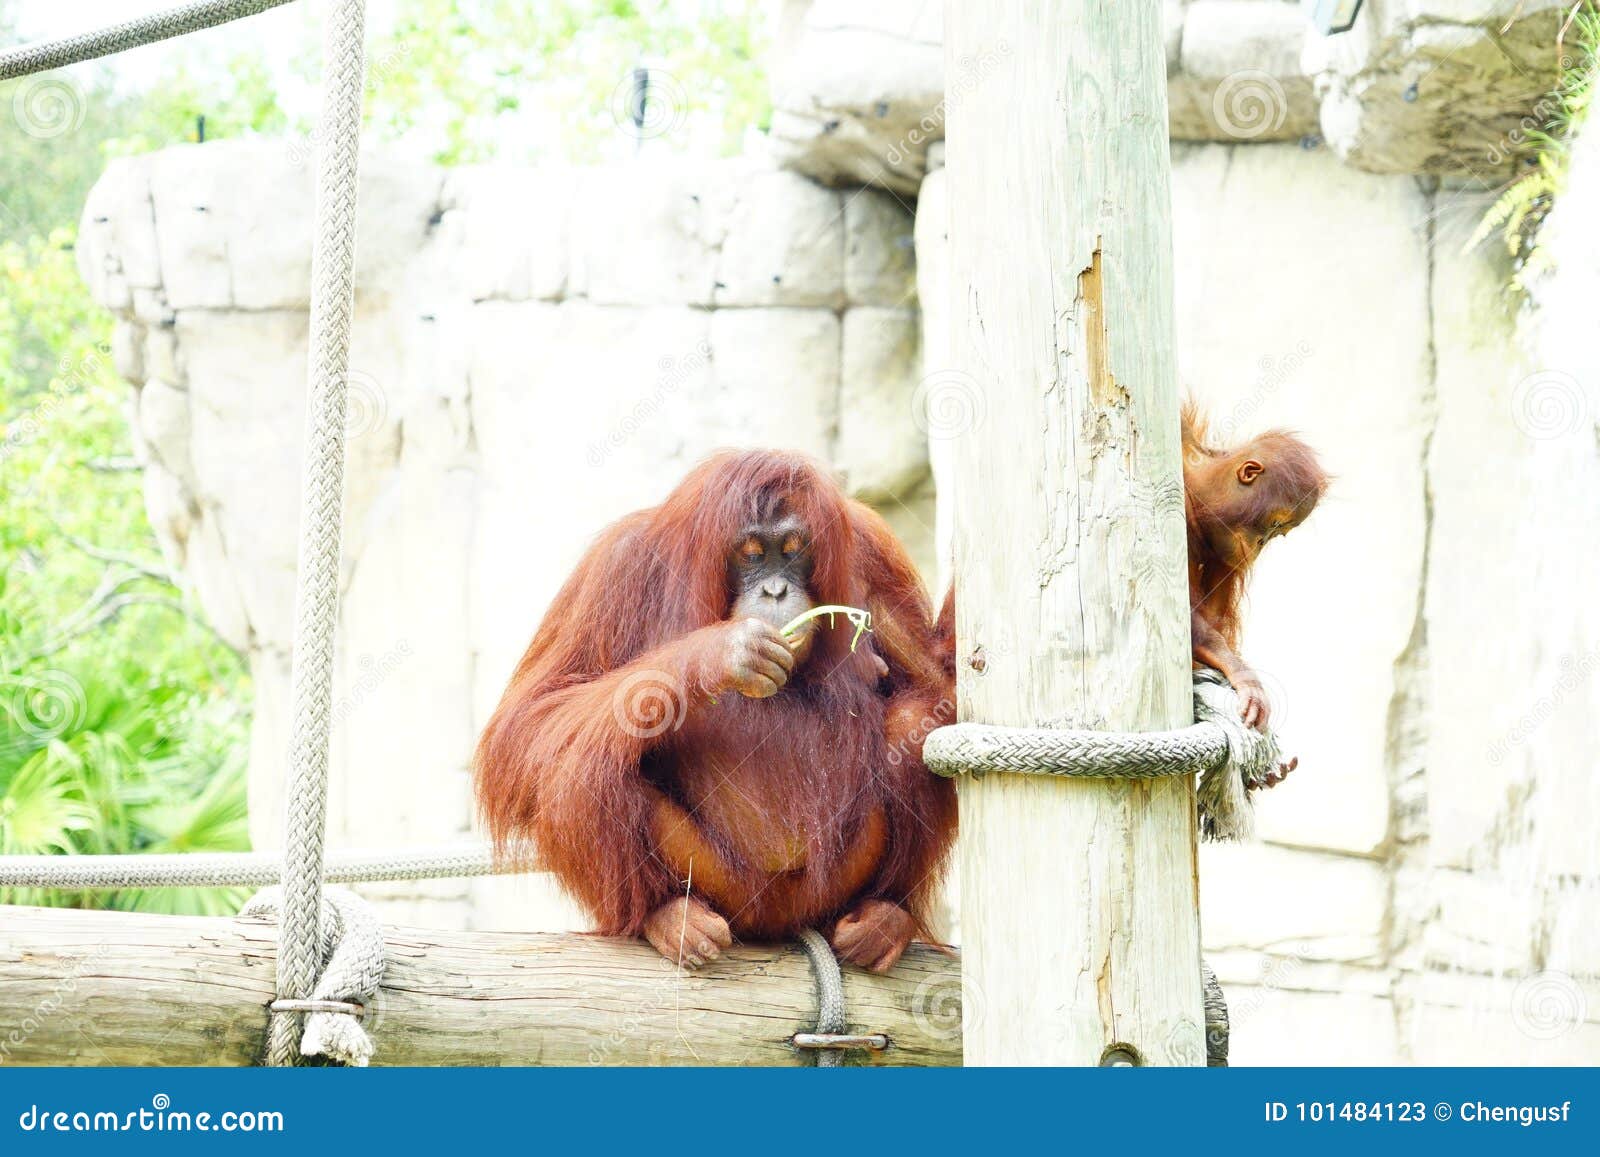 Download Mammal Orangutan Primate Ape Stock Image - Image of bonobo, climb: 101484123